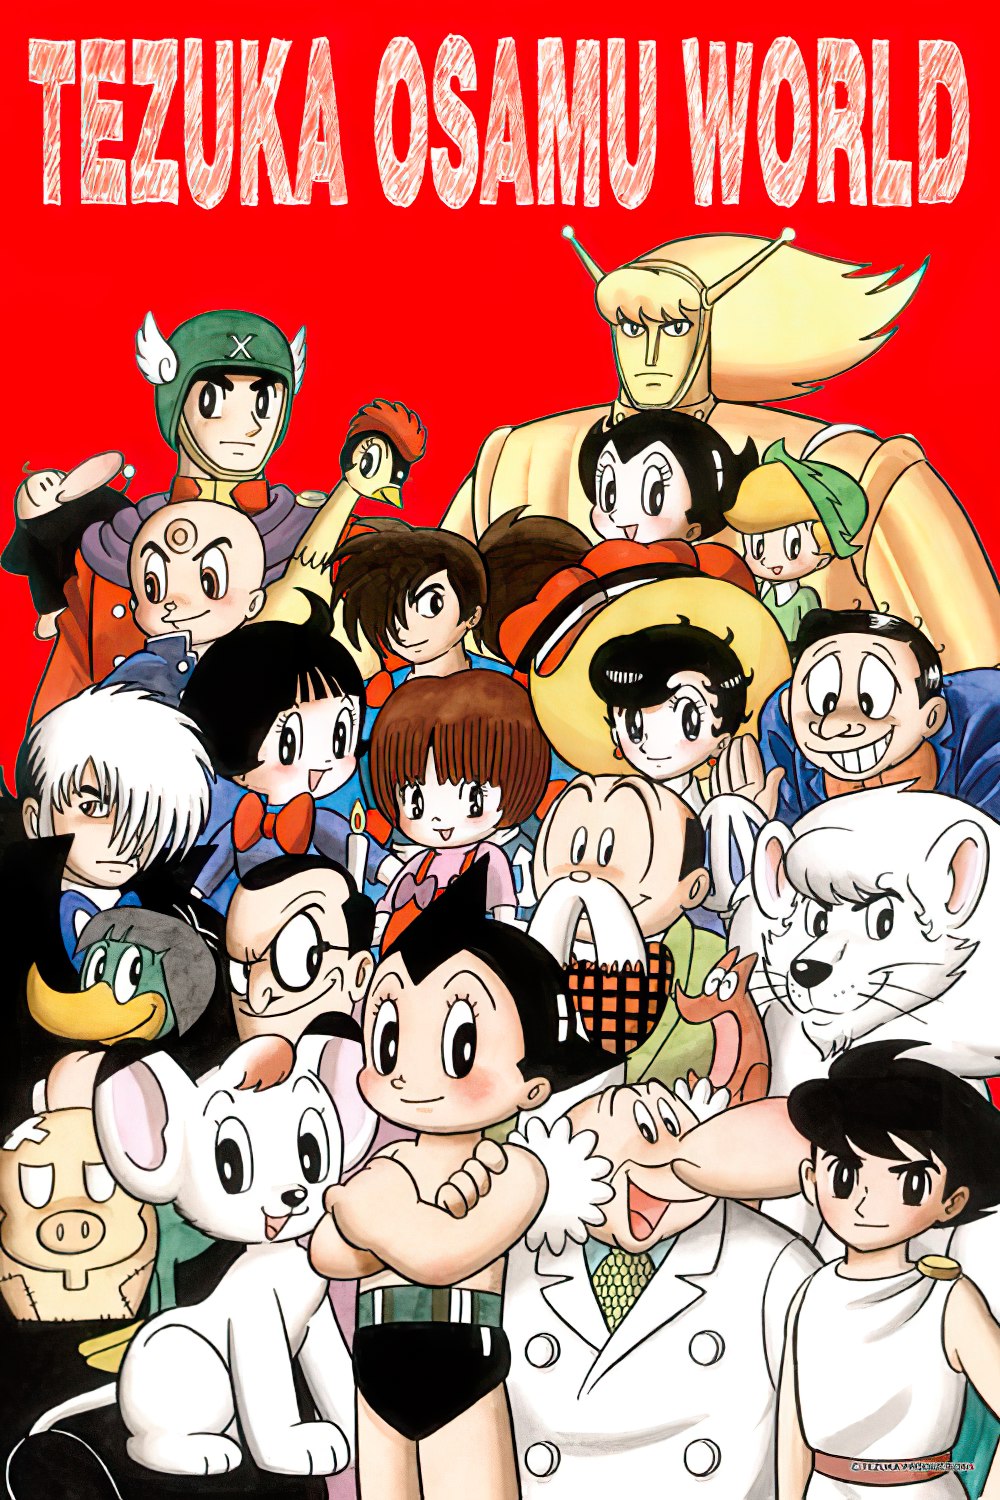 Cuties • Astro Boy • Tezuka Osamu World　1000 PCS　Jigsaw Puzzle